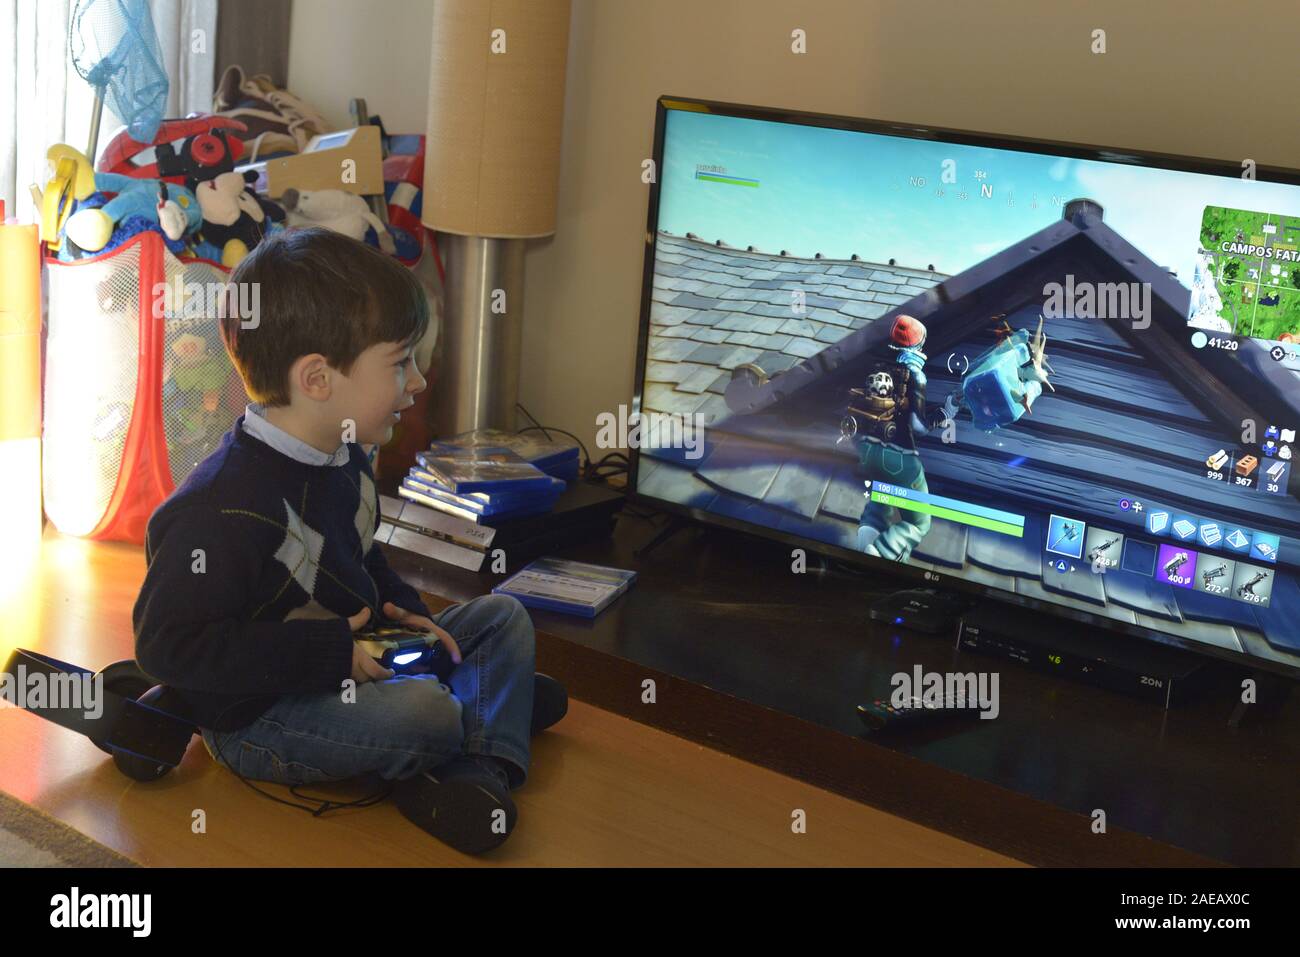 Ein Kind Das Spielen Von Computerspielen Mit Ps4 Playstation 4 Controller Stockfotografie Alamy